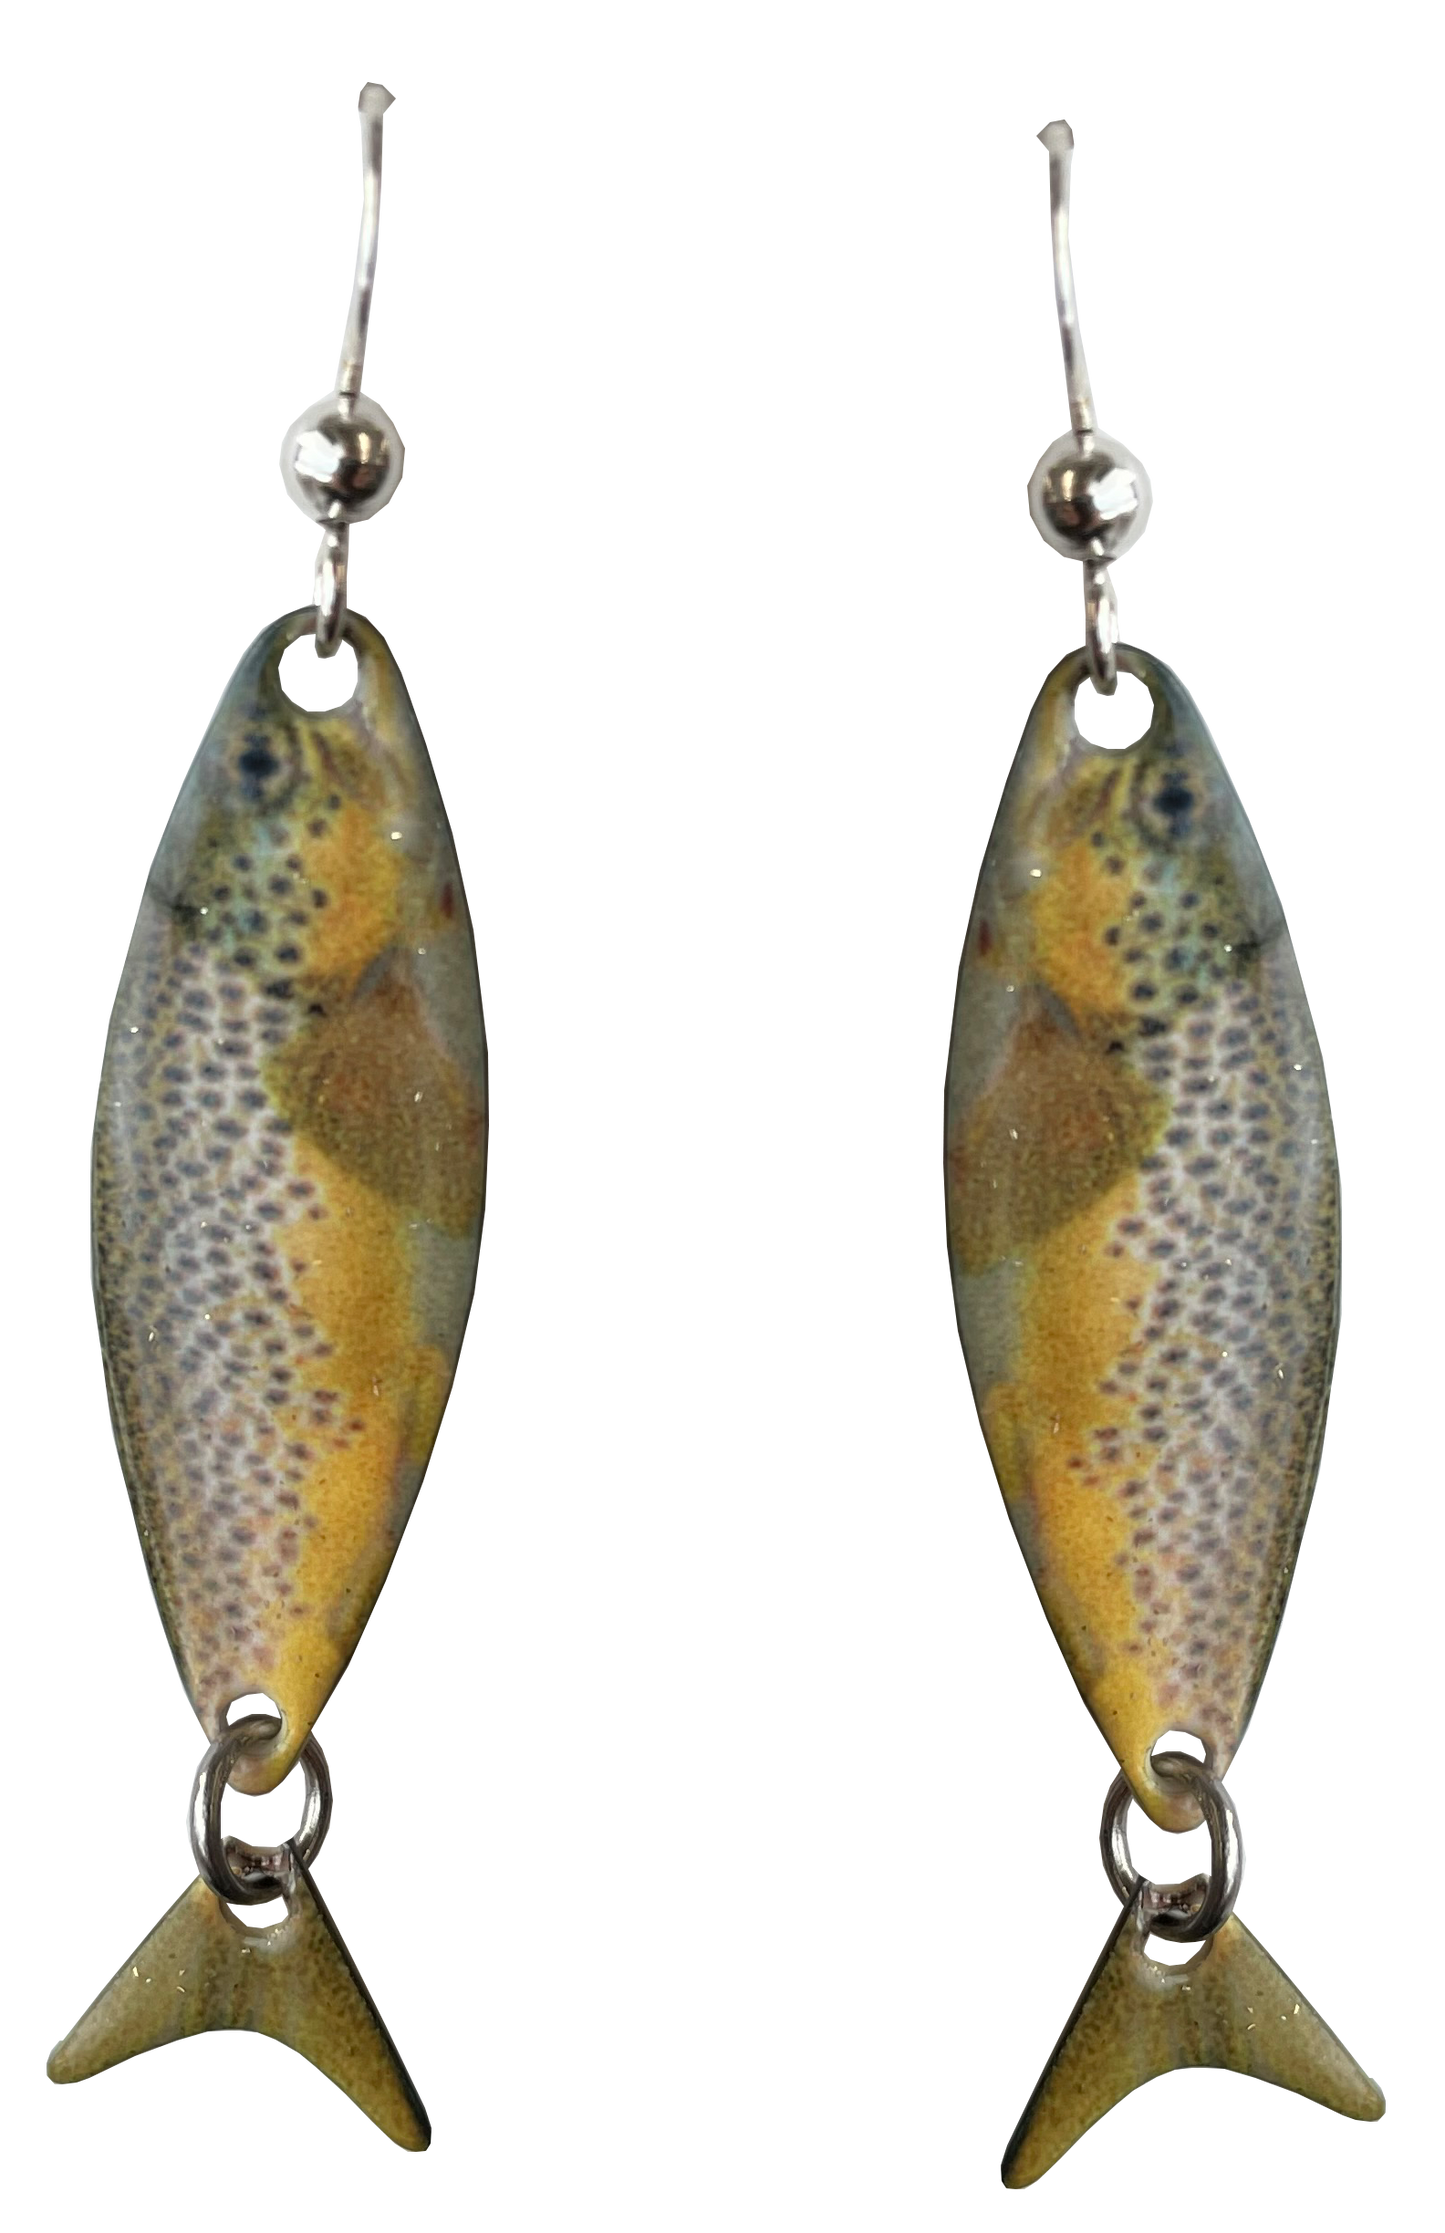 Brown Trout earrings, #3063